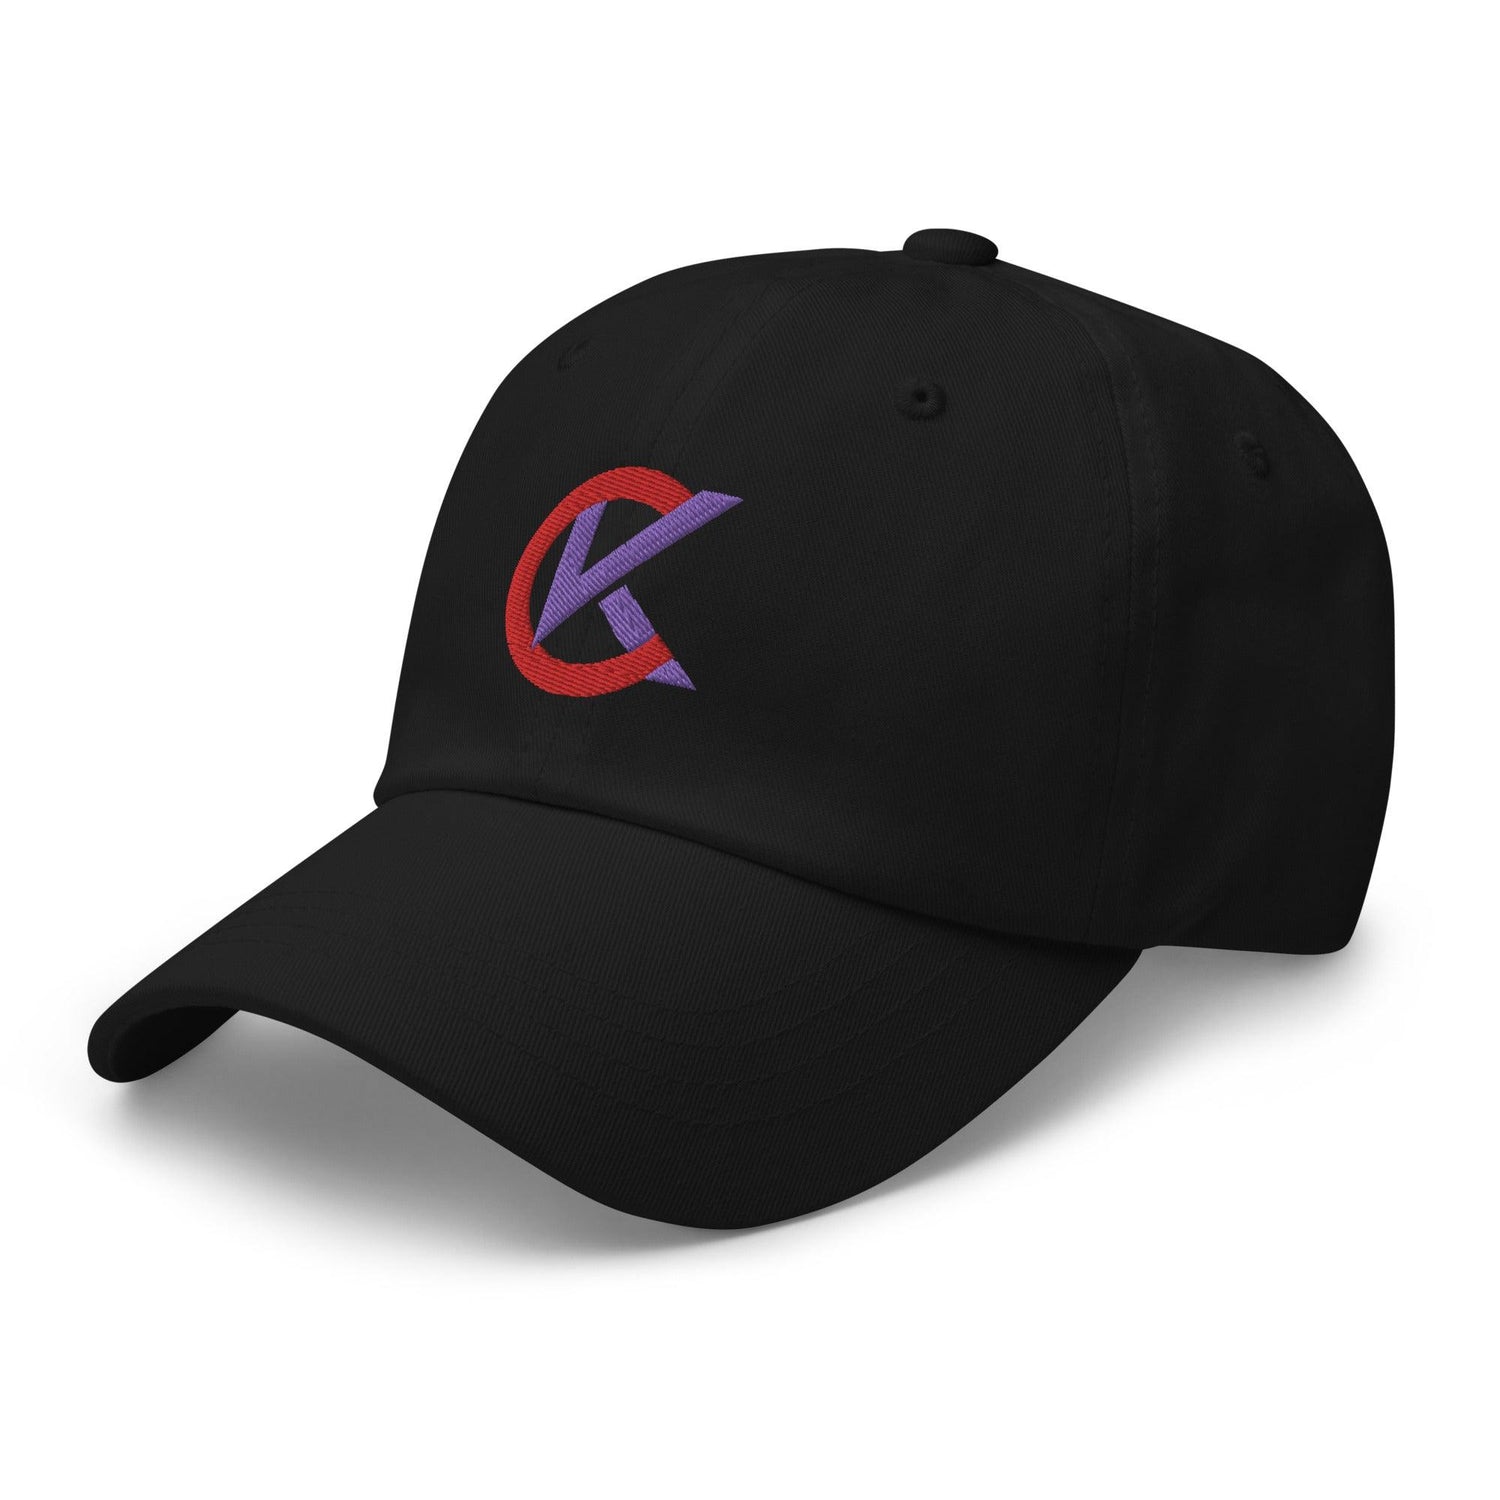 Cooper Kinney "Elite" hat - Fan Arch